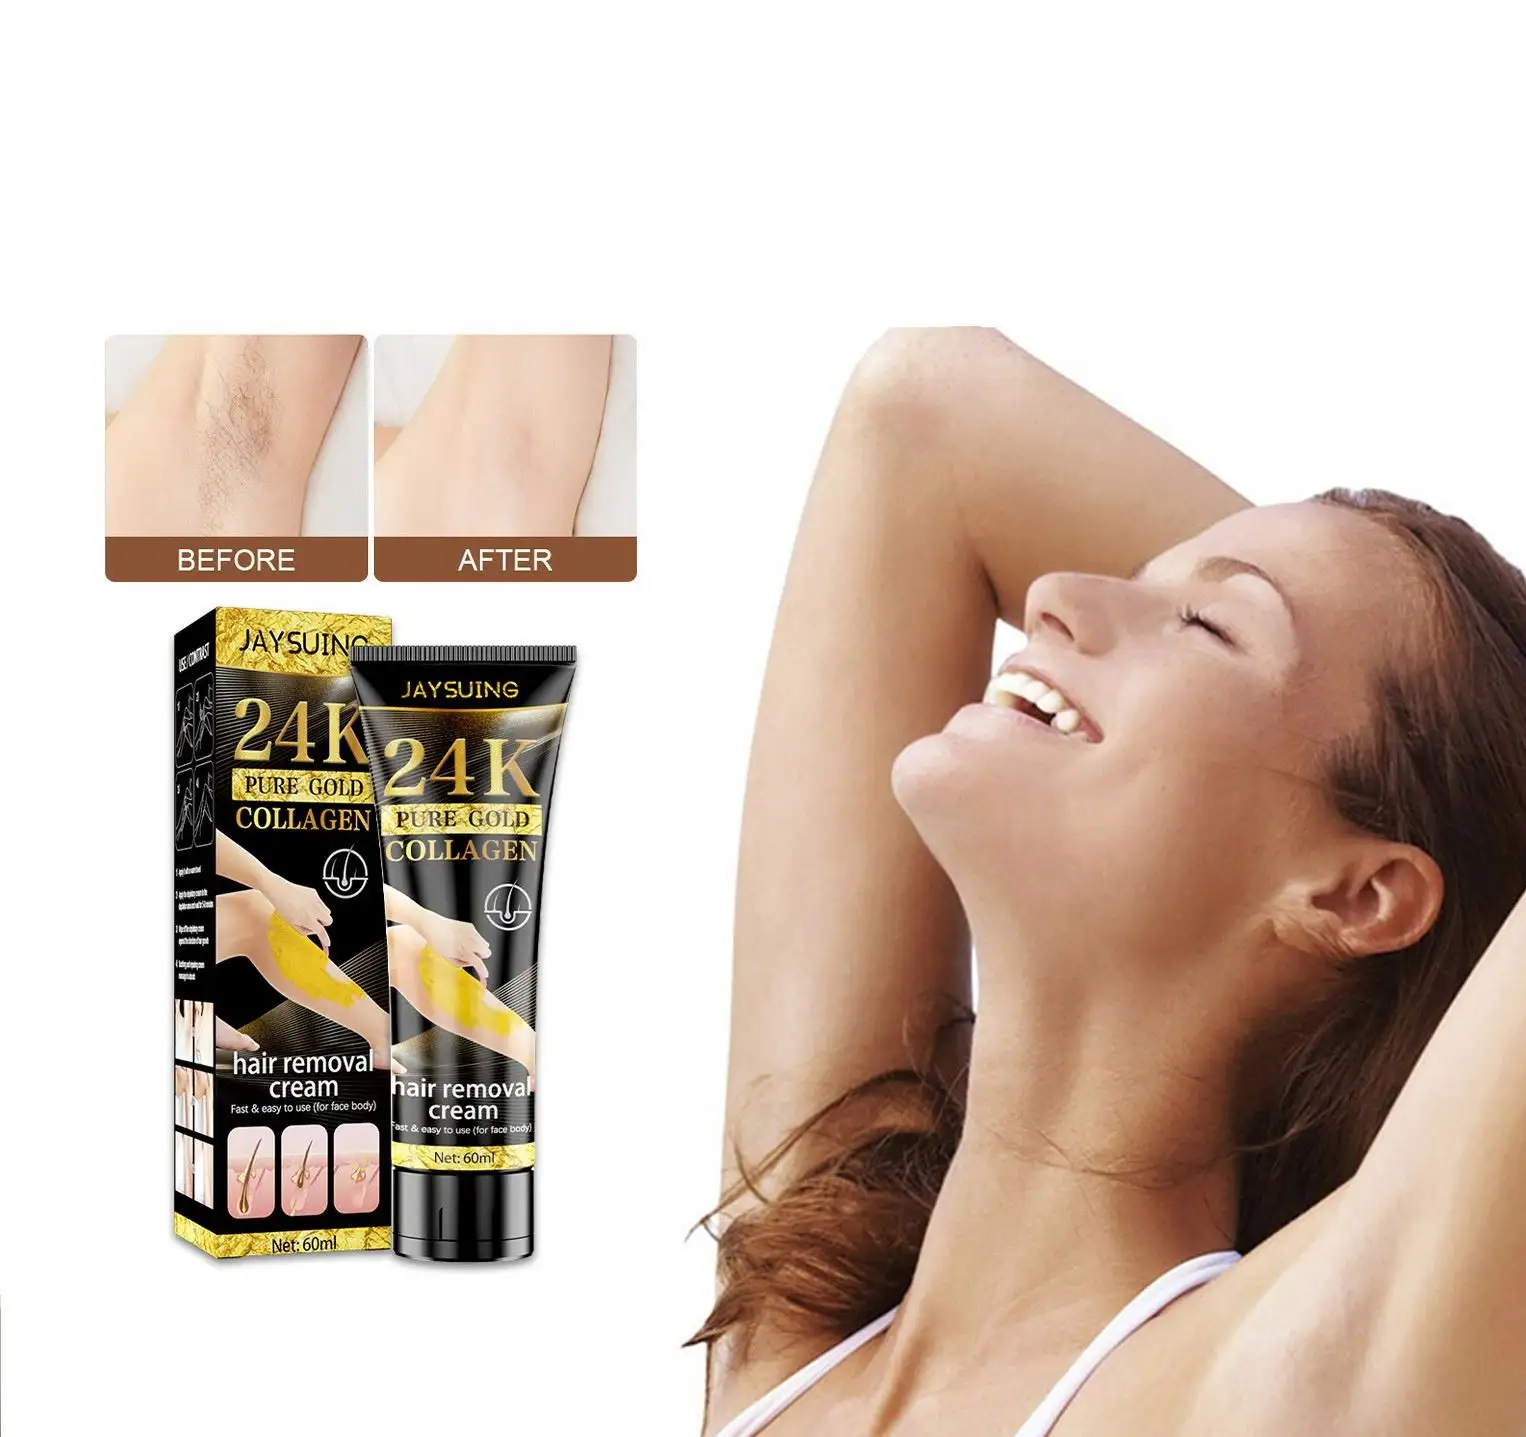 Jaysuing 24K oro femenino colágeno suave mujer axila pierna parte privada mano depilación permanente axila crema mujeres